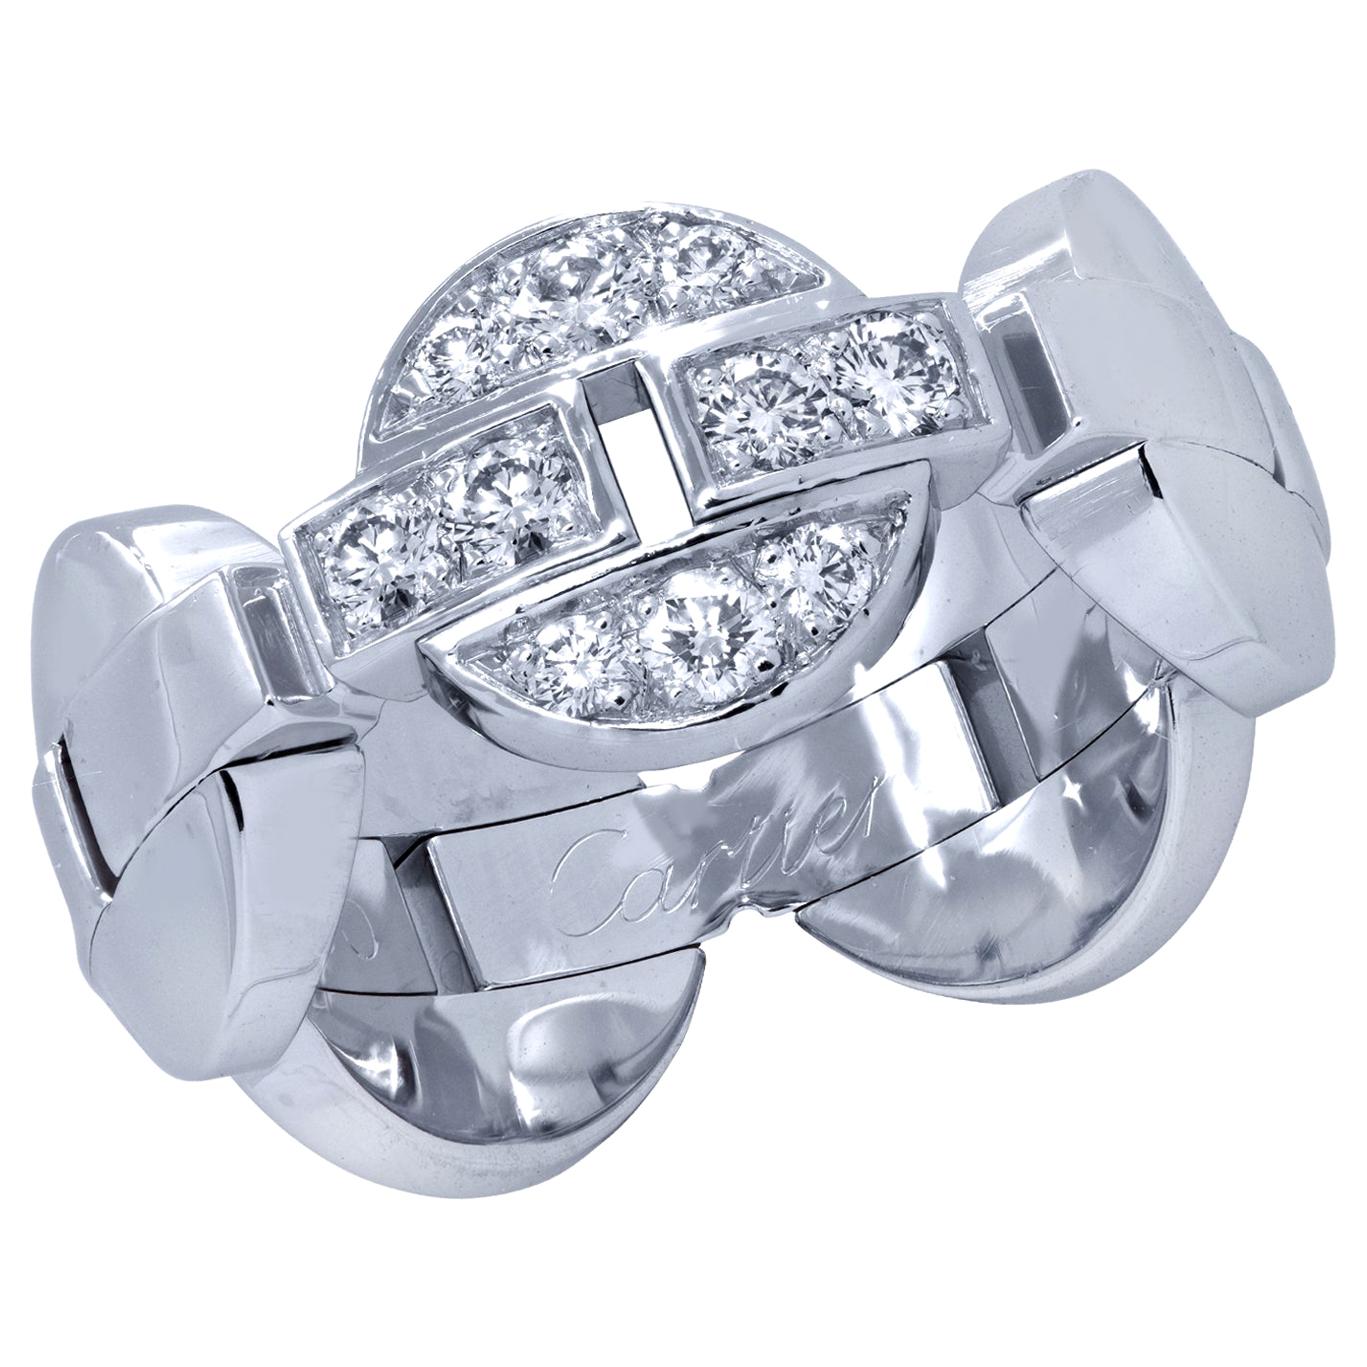 Cartier Himalia Diamond Ring